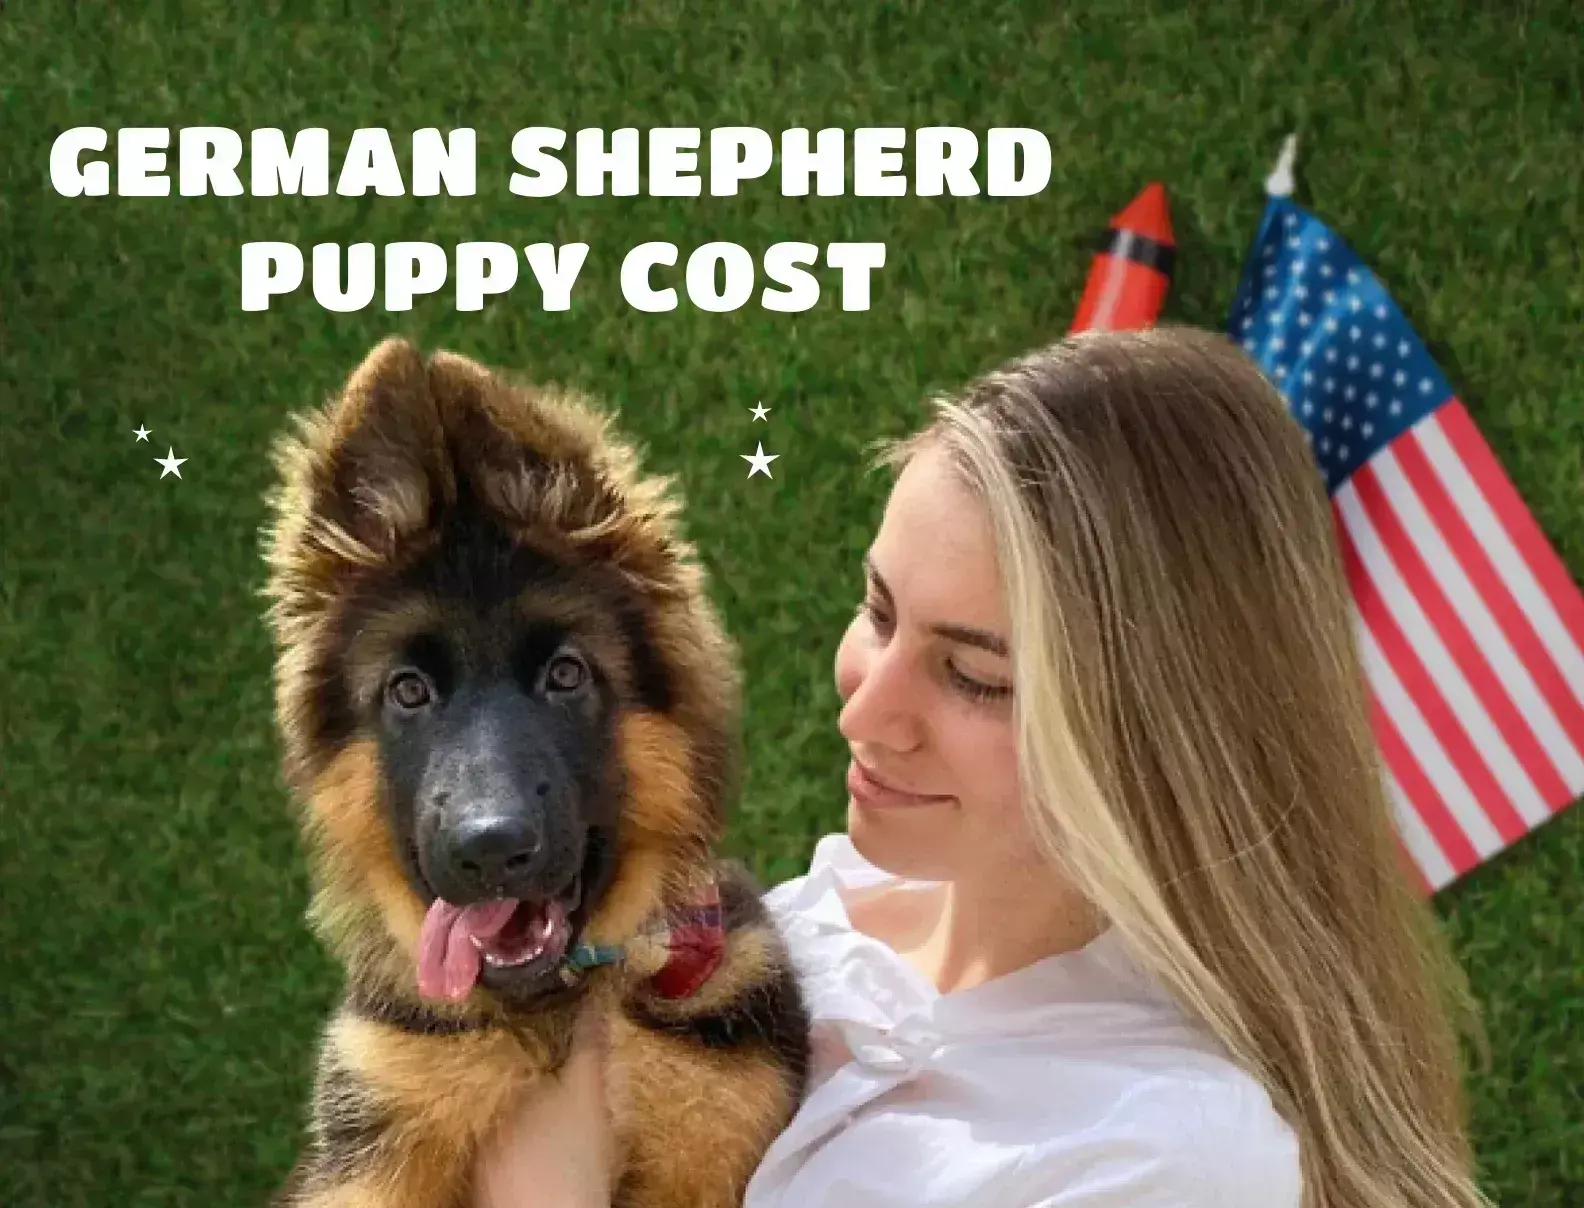 German Shepherd Puppy Cost Image